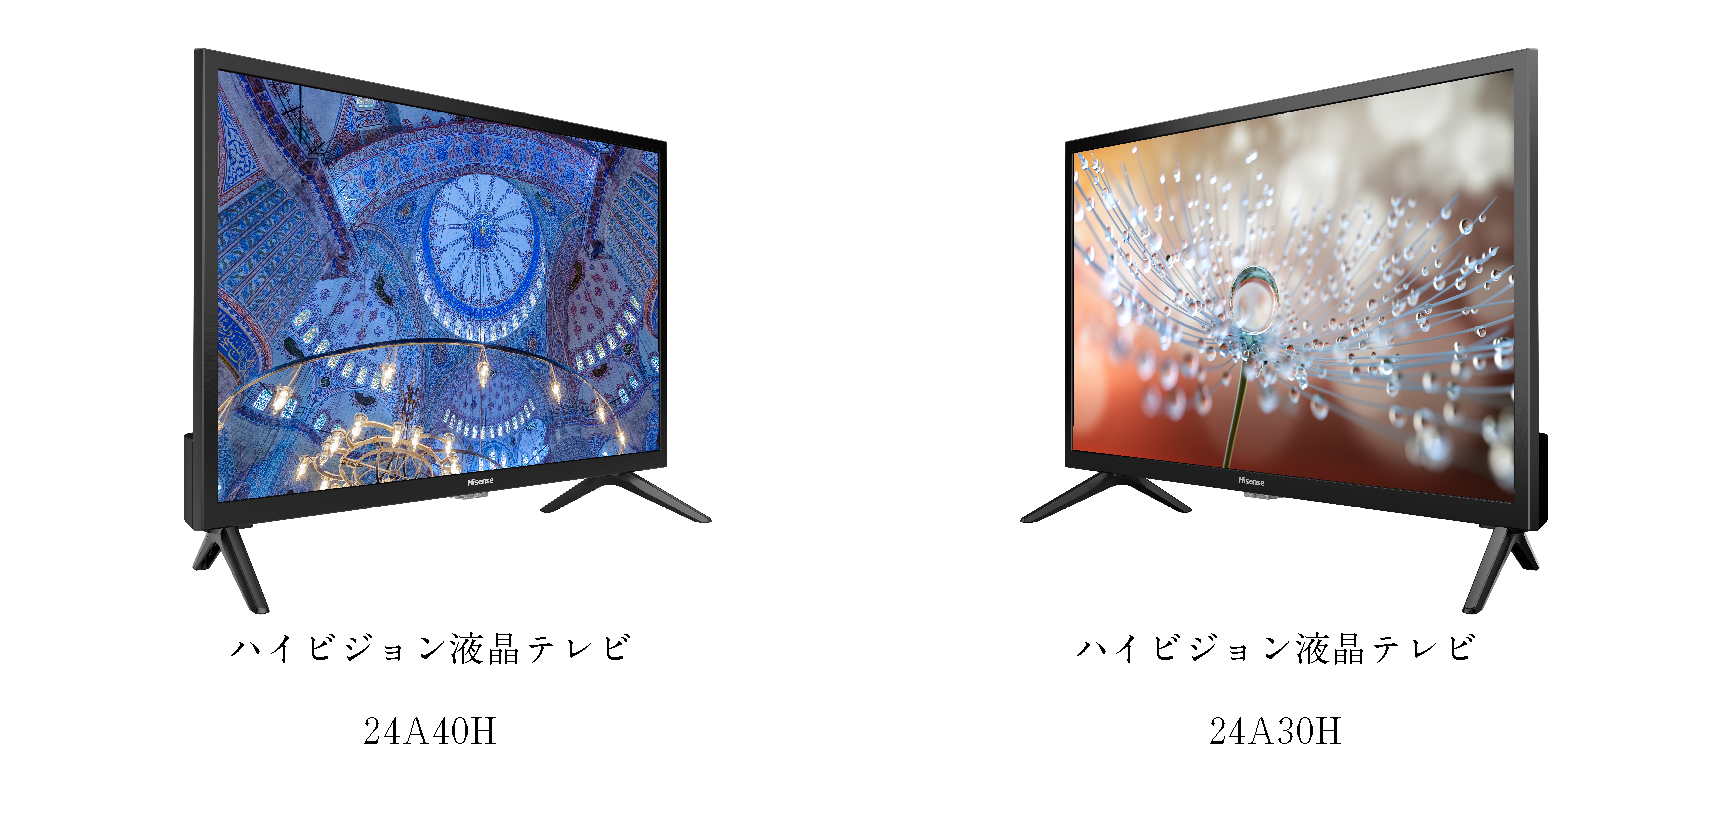 ハイセンスジャパン、ハイビジョン液晶テレビ2機種 「24A40H」「24A30H 